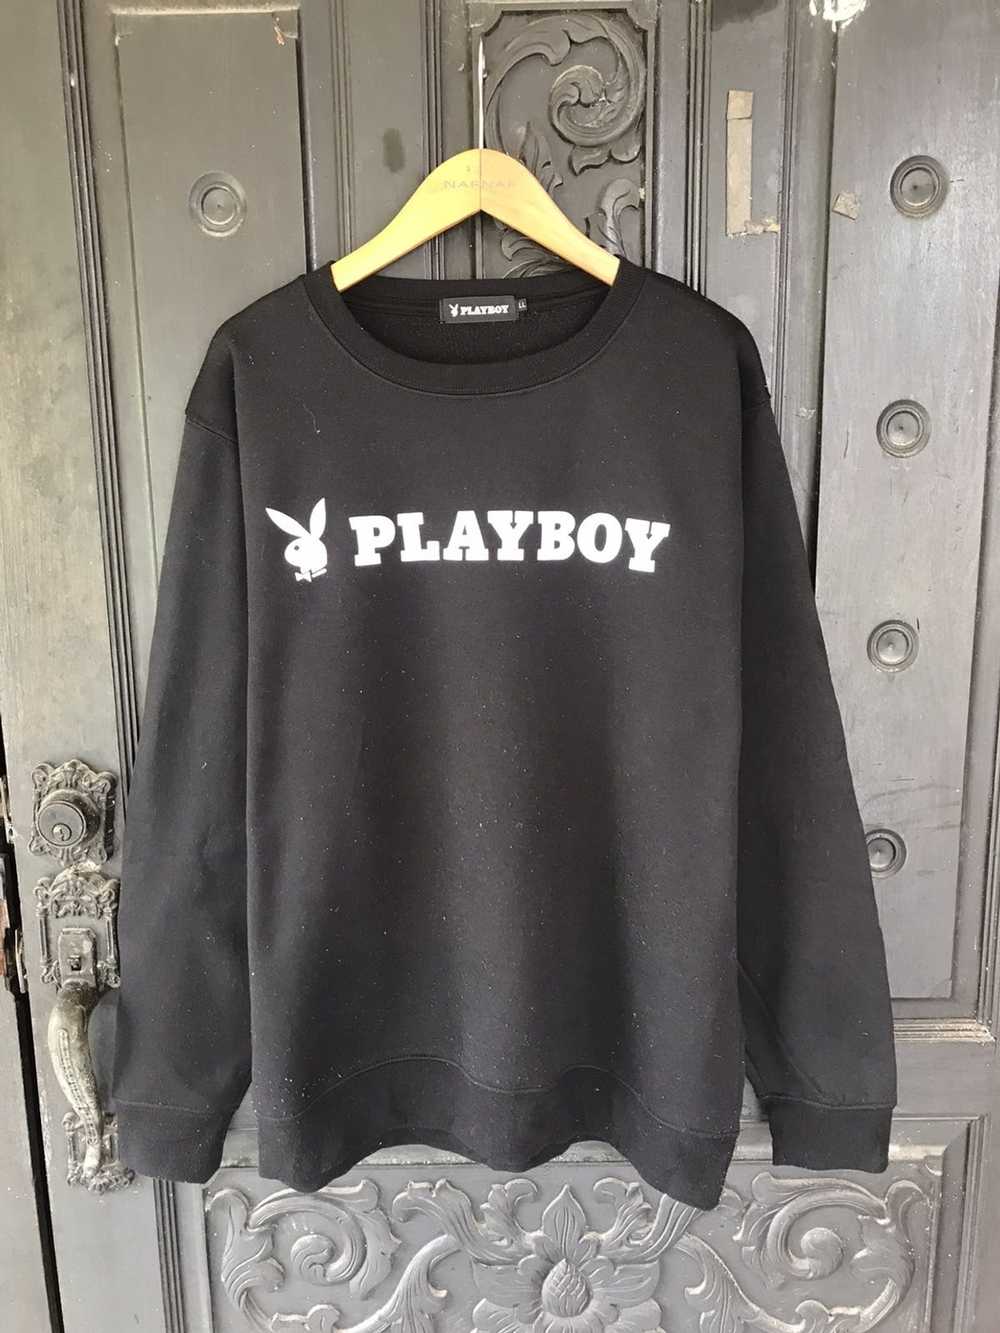 Playboy Playboy sweatshirts logo - image 2